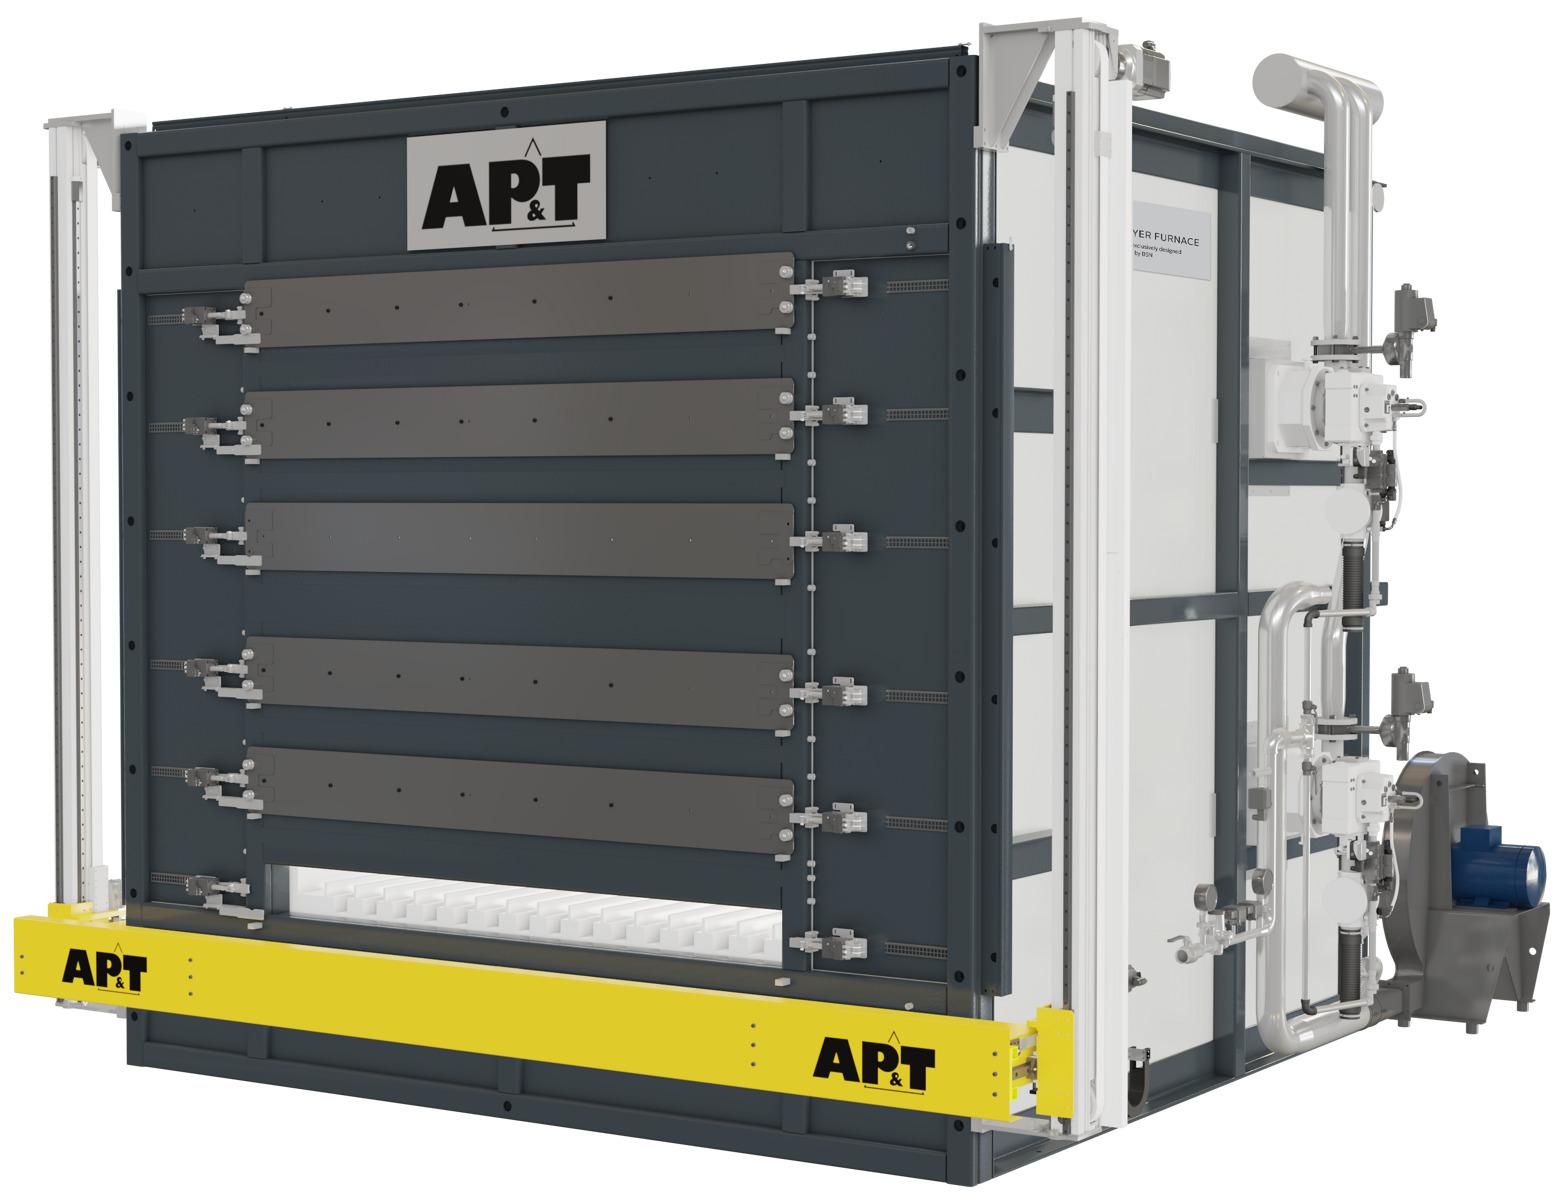 AP&T のエネルギー効率のよい、電気稼働の多段炉には、ホットスタンピングおよびアルミニウムの熱間成形向けのデザインが豊富にあります。